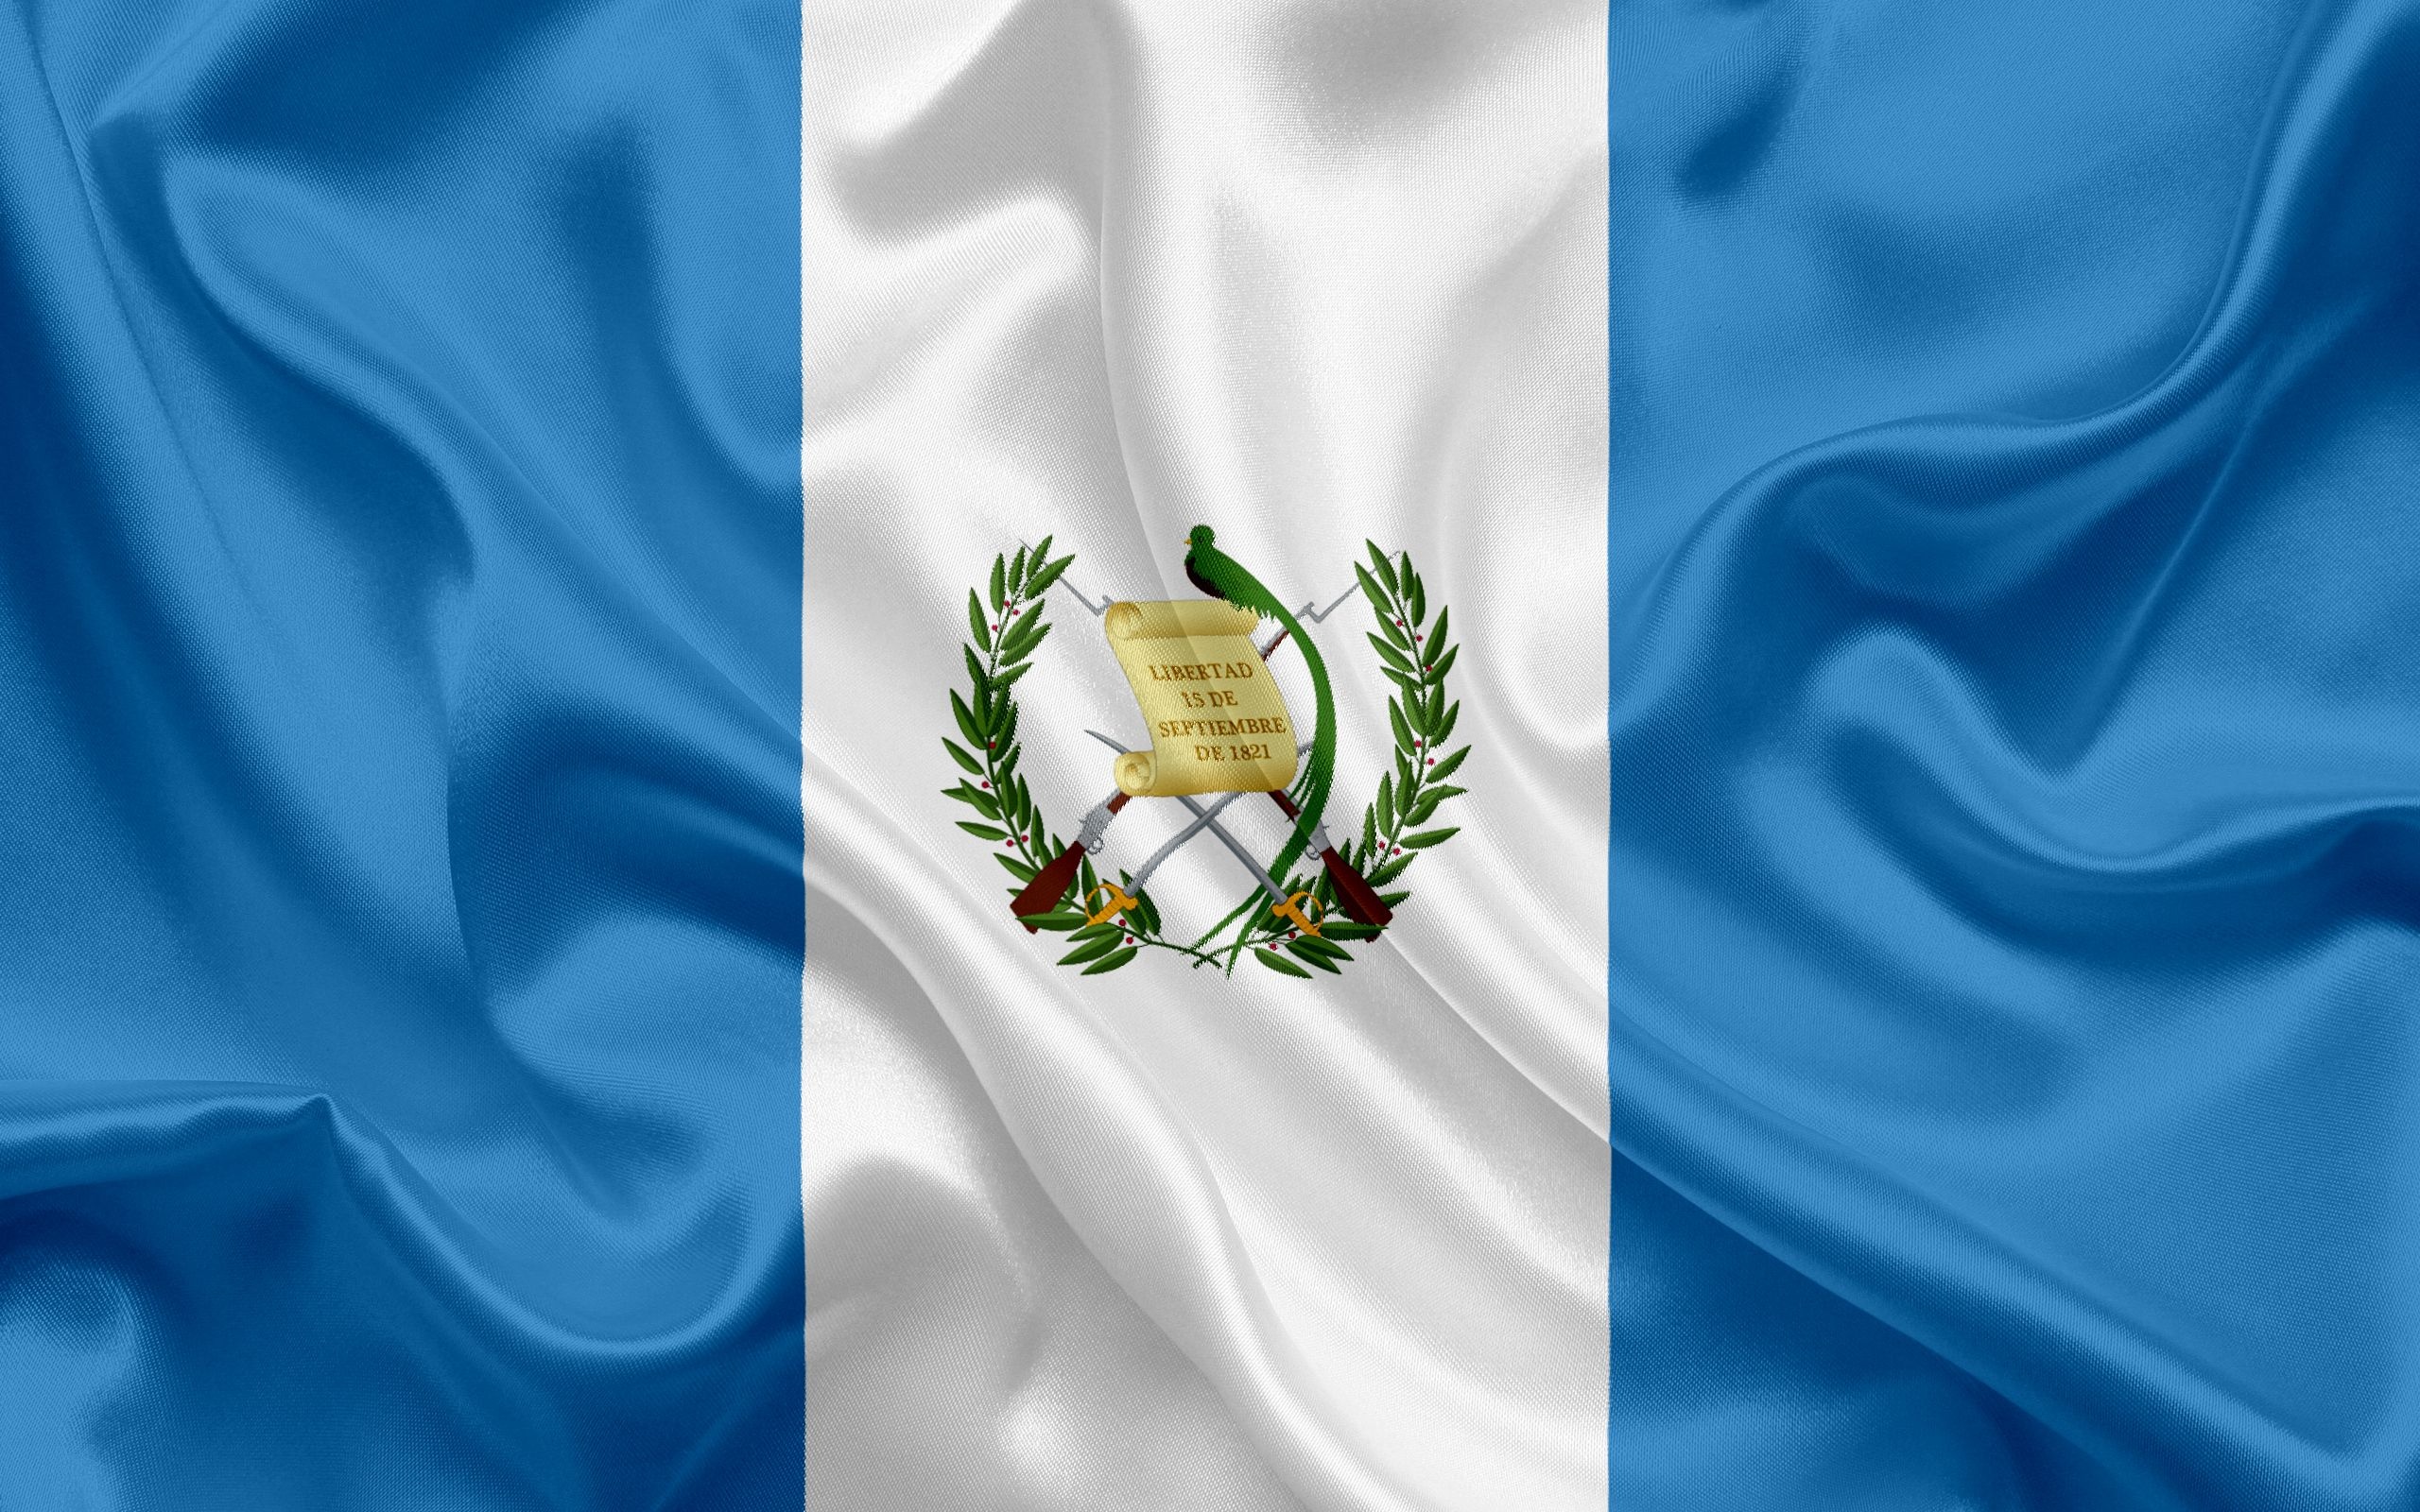 HD wallpaper, National Pride, Desktop Hd Guatemala Wallpaper Image, Bandera Guatemala, Patriotic Symbol, 2560X1600 Hd Desktop, Centroamerica Wallpaper